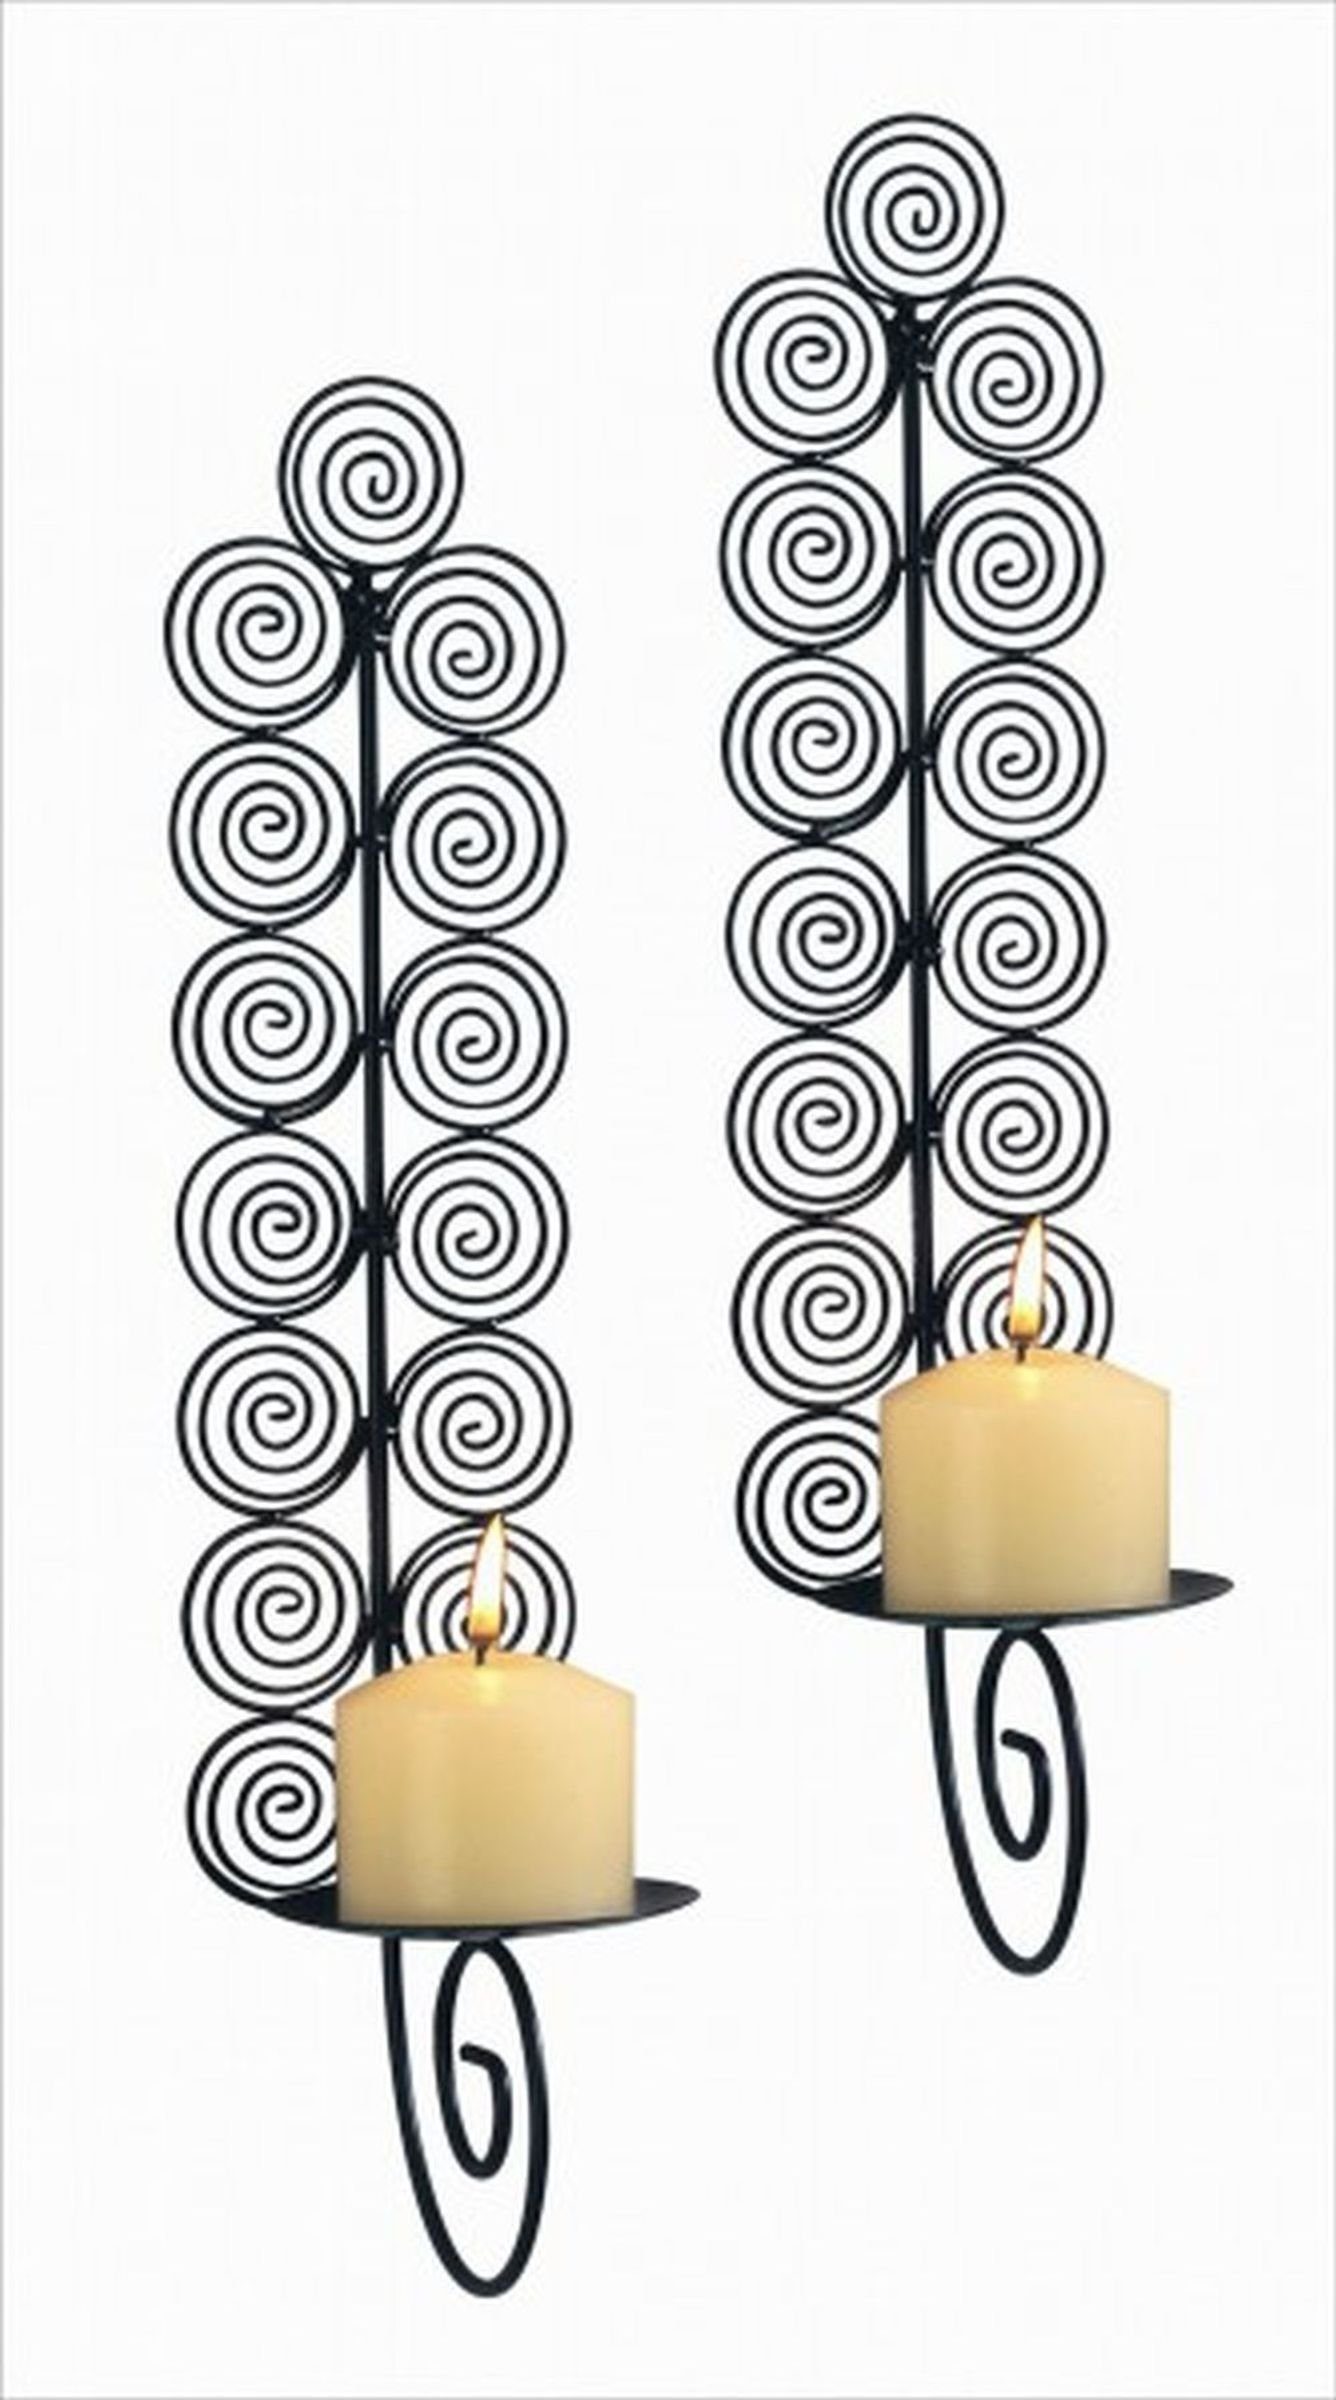 Wanddeko Kerzen Deko Set Kerzenwandhalter 2er Gravidus Wandkerzenhalter